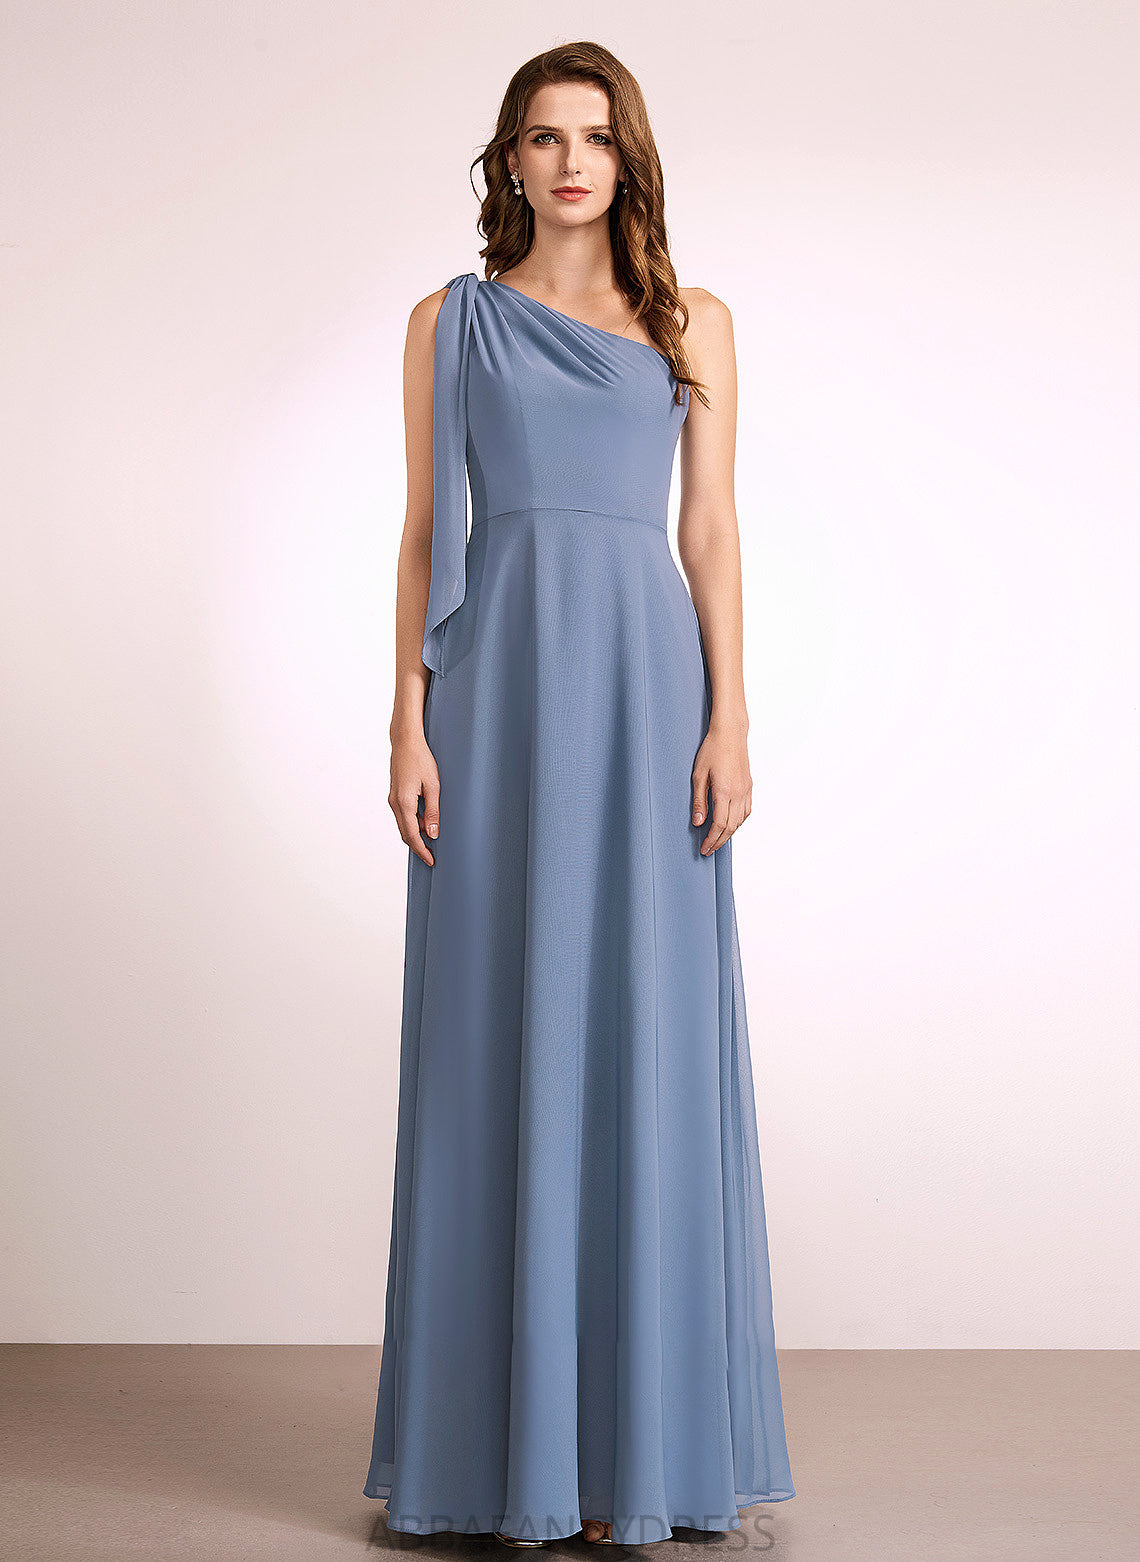 Bow(s) Silhouette Floor-Length Length Fabric A-Line Embellishment One-Shoulder Neckline Alina A-Line/Princess Natural Waist